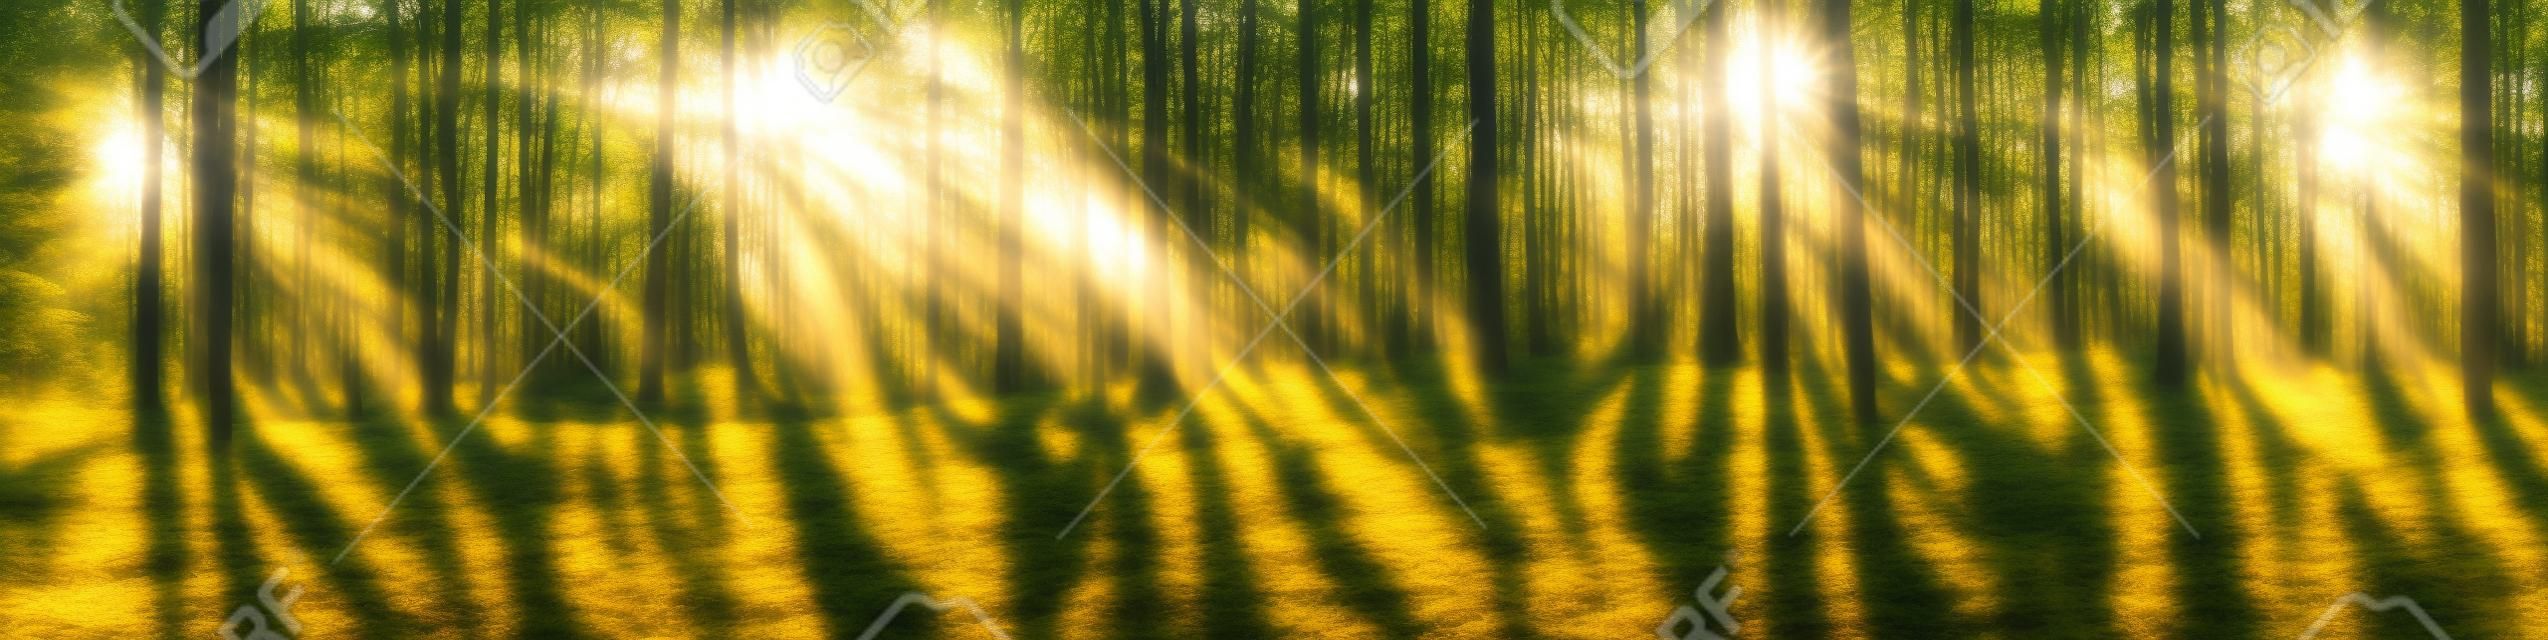 Hermoso panorama de bosque con sol brillando a través de los árboles